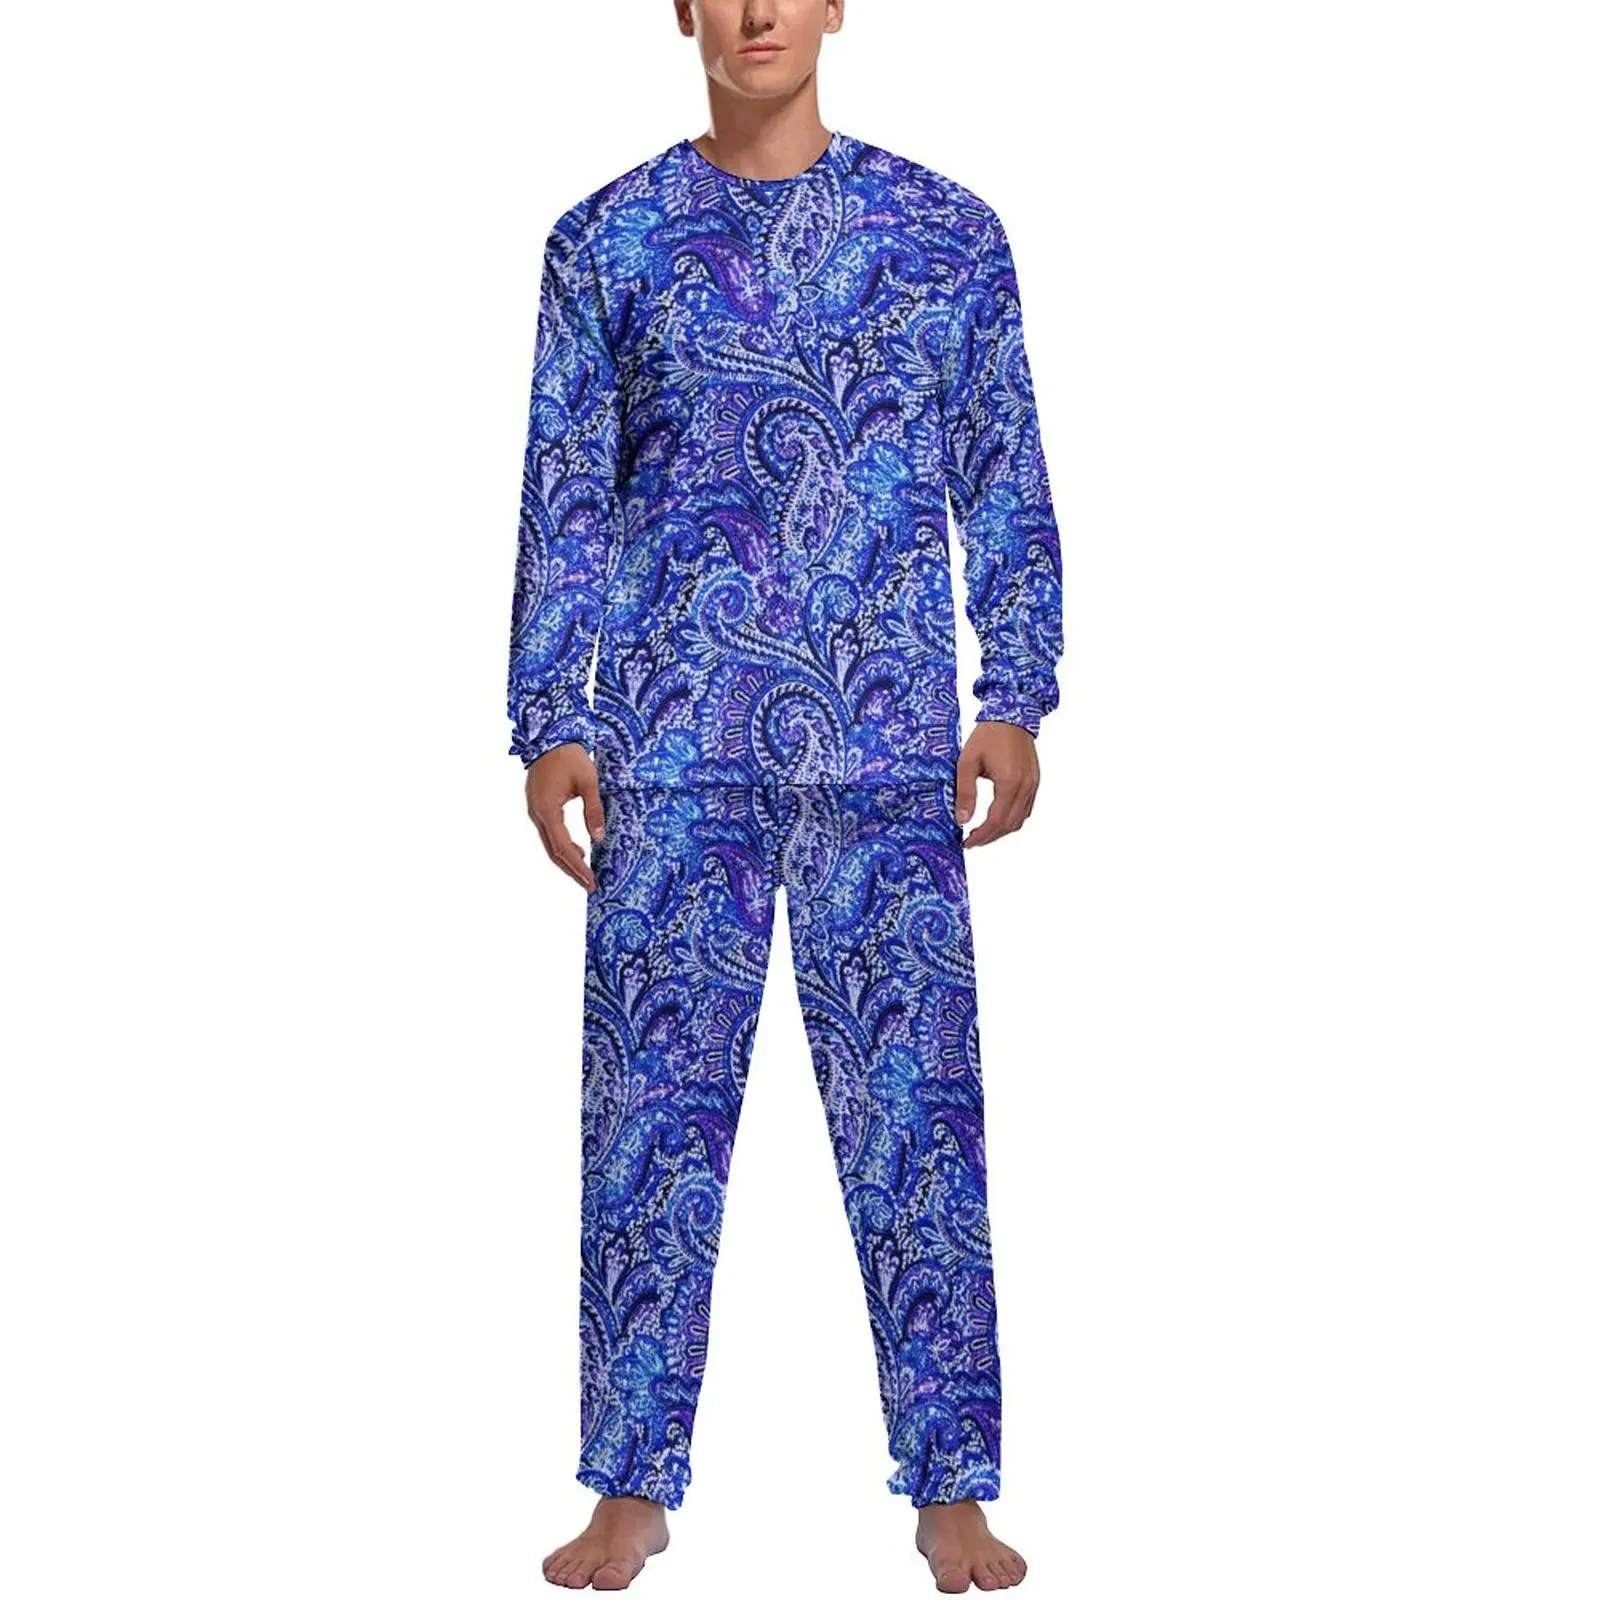 

Пижама Мужская с принтом пейсли, милая пижама в стиле ретро, одежда для сна с длинным рукавом, комплект из 2 предметов для отдыха, ярко-голубая